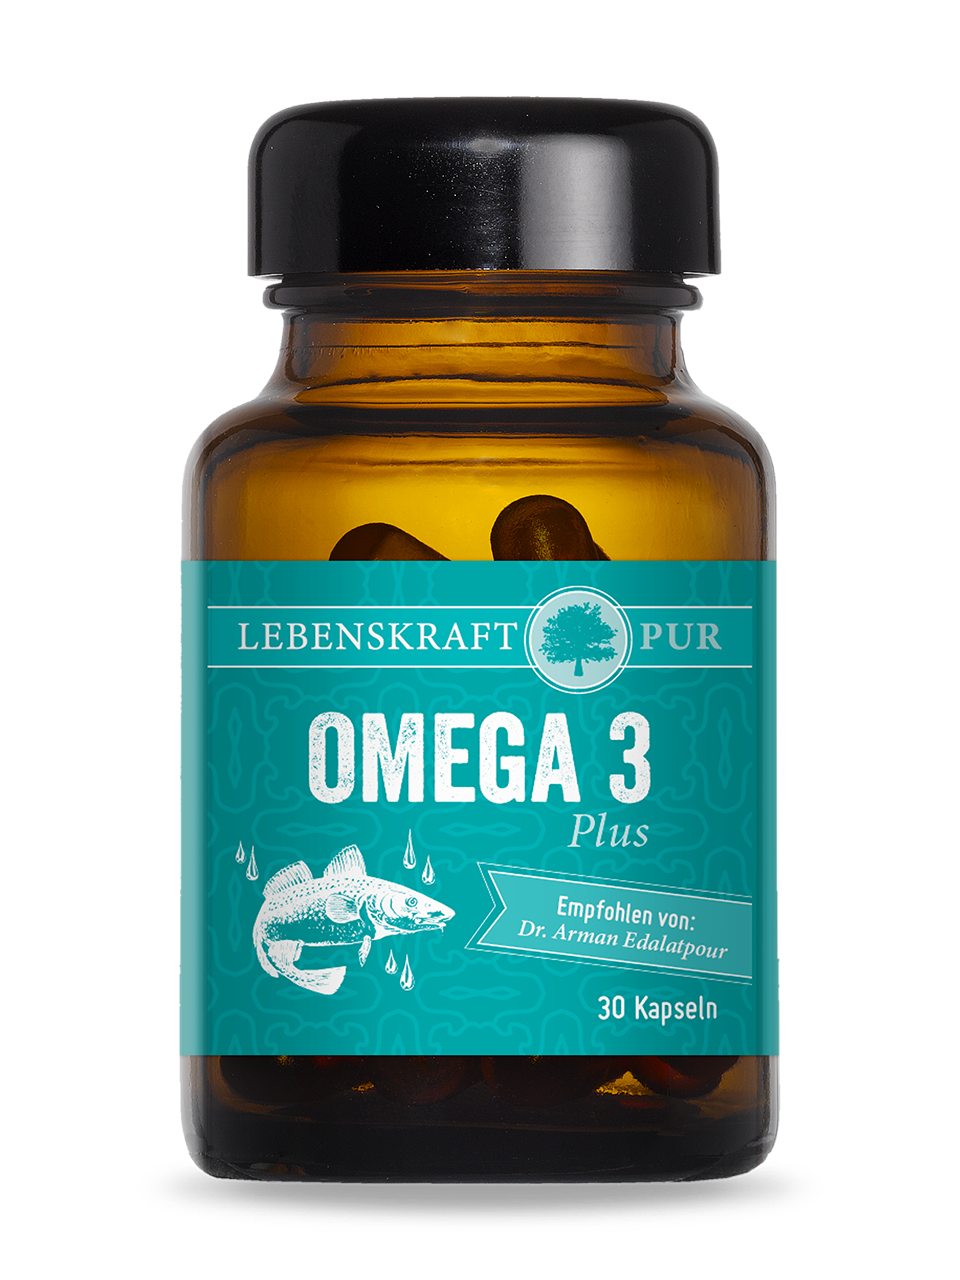 Omega 3 Plus | MSC-zertifiziert 100 % schadstofffrei reines Fischöl Omega 3 Plus liefert in einer einzigartigen Rezeptur hochwertige und an Reinheit und Frische kaum zu überbietende Omega-3-Fettsäuren. Darunter auch zu einem hohen Anteil die wertvollen Fettsäuren EPA und DHA. Ergänzt werden die Fettsäuren mit natürlichem Astaxanthin aus der Blutregenalge (Hämatococcus pluvialis). Das stärkste natürliche Antioxidans, welches außerdem die Blut-Hirn-Schranke überwinden kann. Also sowohl im fett- wie im wasserlöslichen Milieu wirkt.